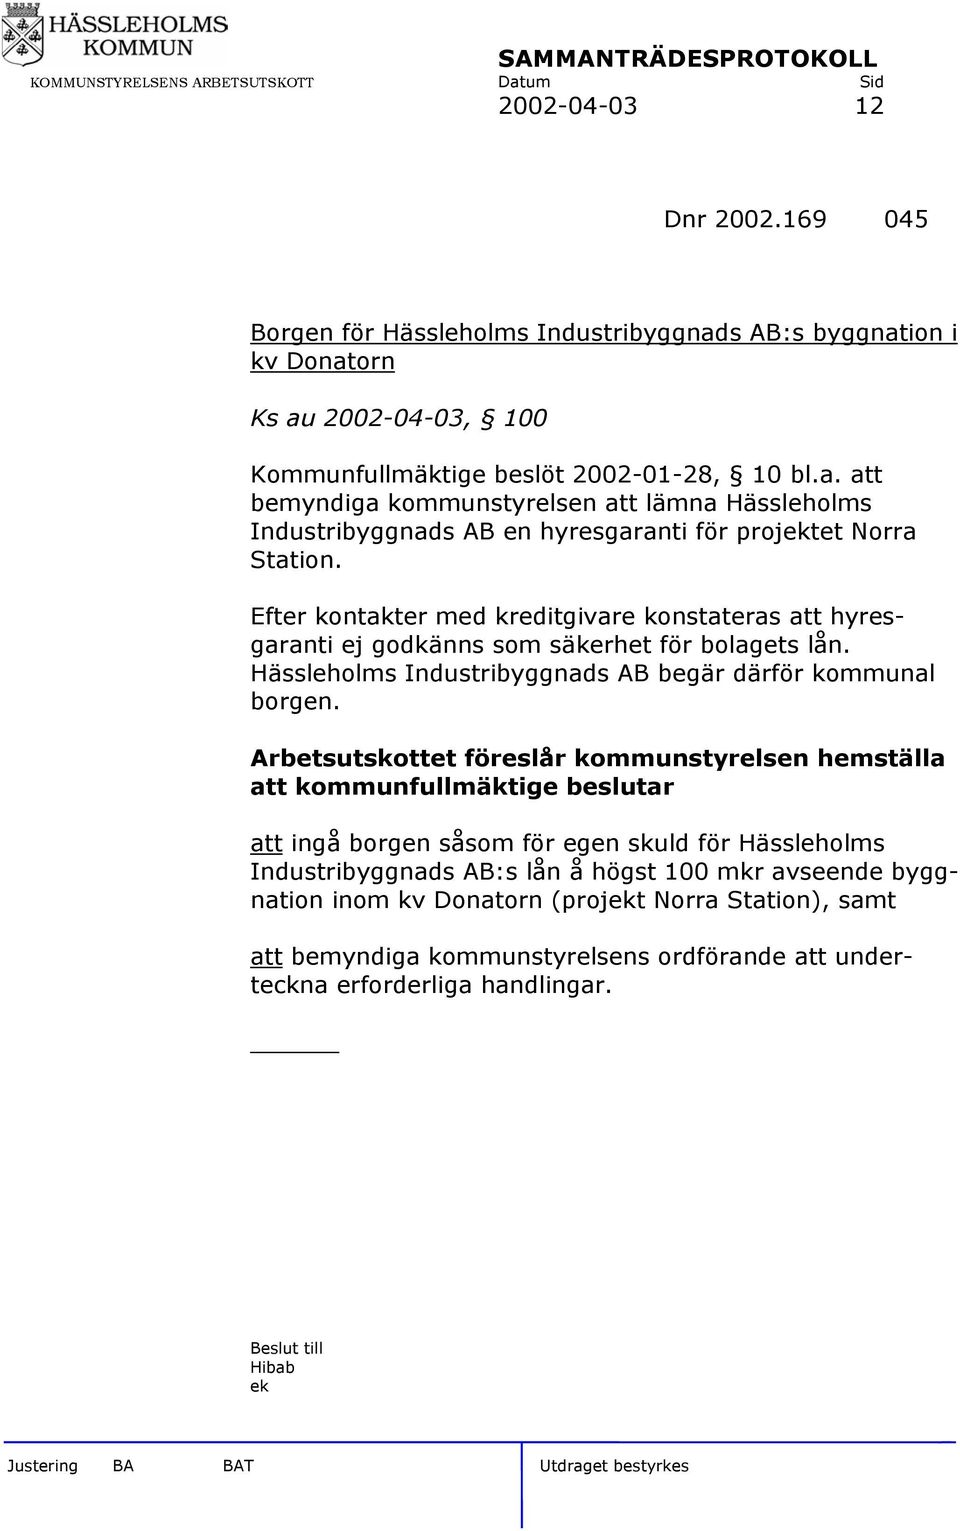 Arbetsutskottet föreslår kommunstyrelsen hemställa att kommunfullmäktige beslutar att ingå borgen såsom för egen skuld för Hässleholms Industribyggnads AB:s lån å högst 100 mkr avseende byggnation